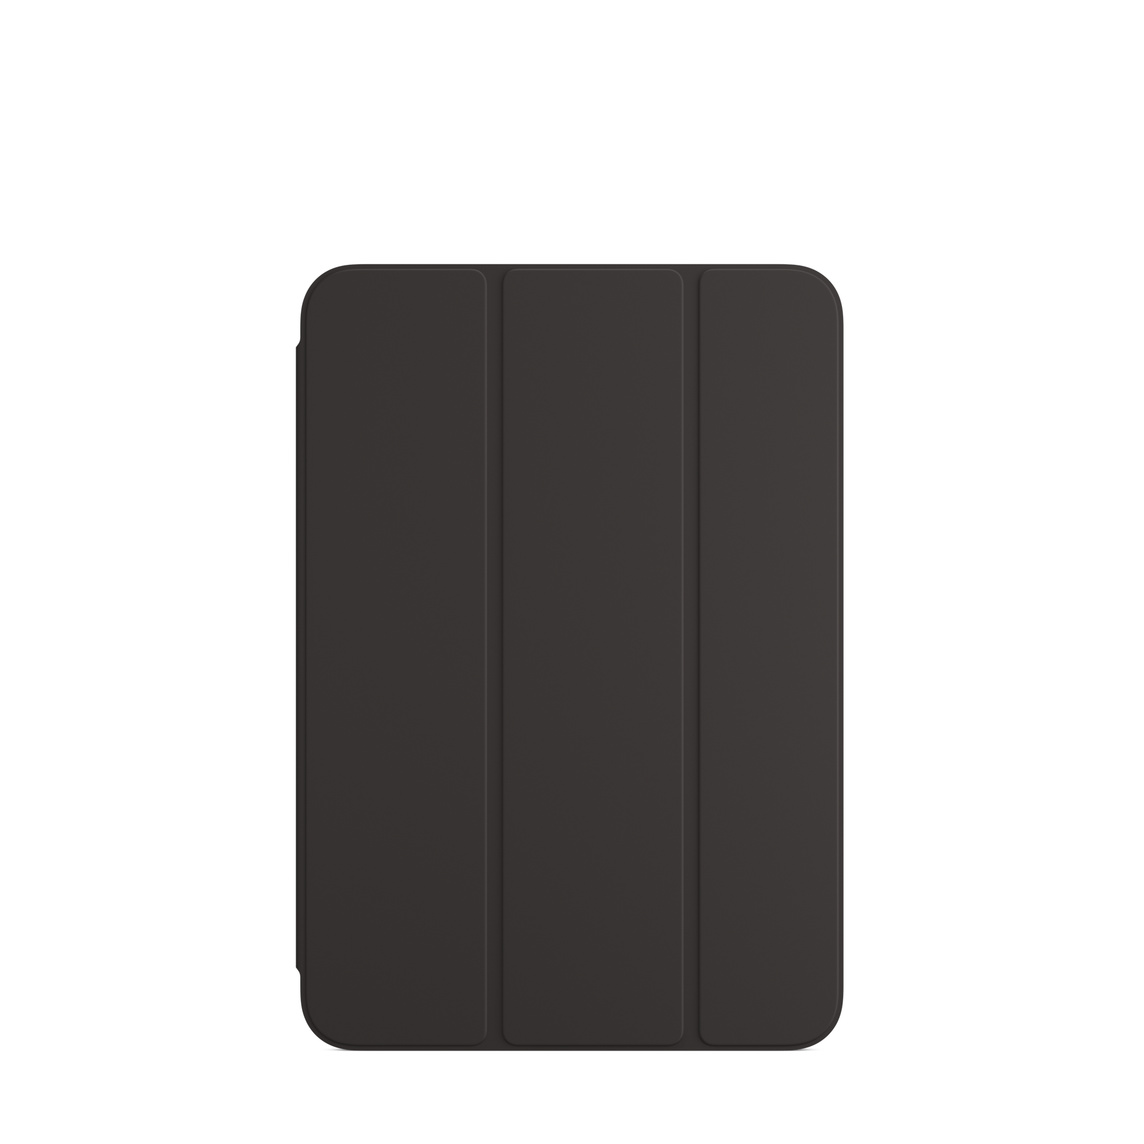 Smart Folio für das iPad mini (6. Generation) in Schwarz.